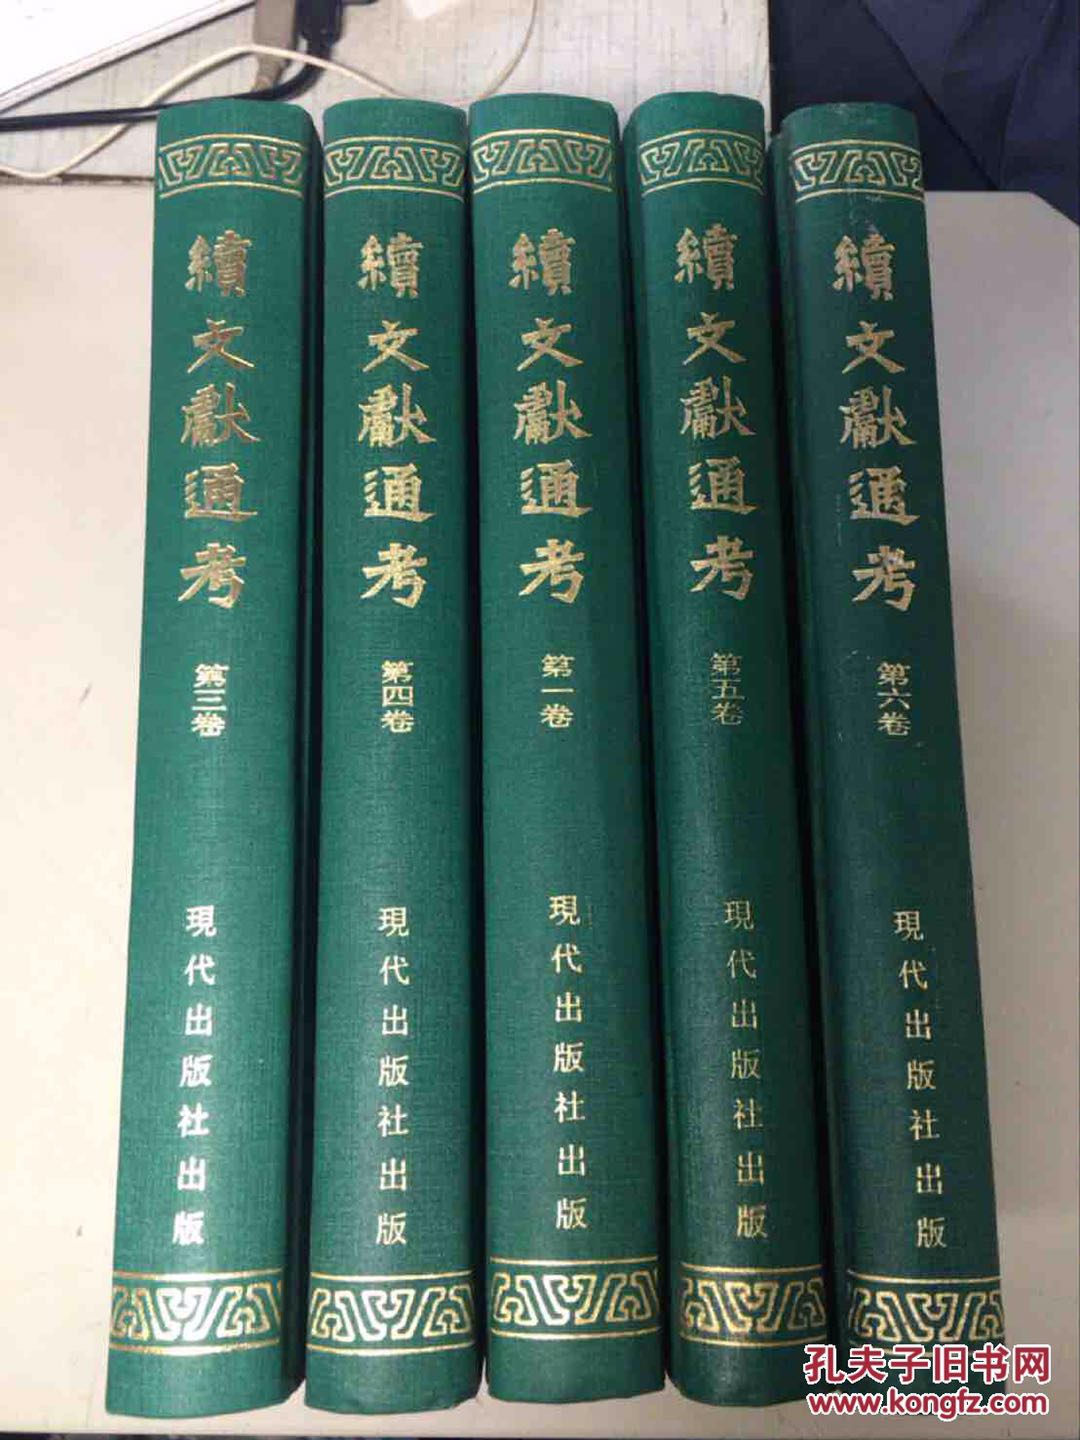 北京 朝阳区 小关街 搬家 文学书籍 工具书 社科 经济类 大学毕业处理二手书旧书回收中心